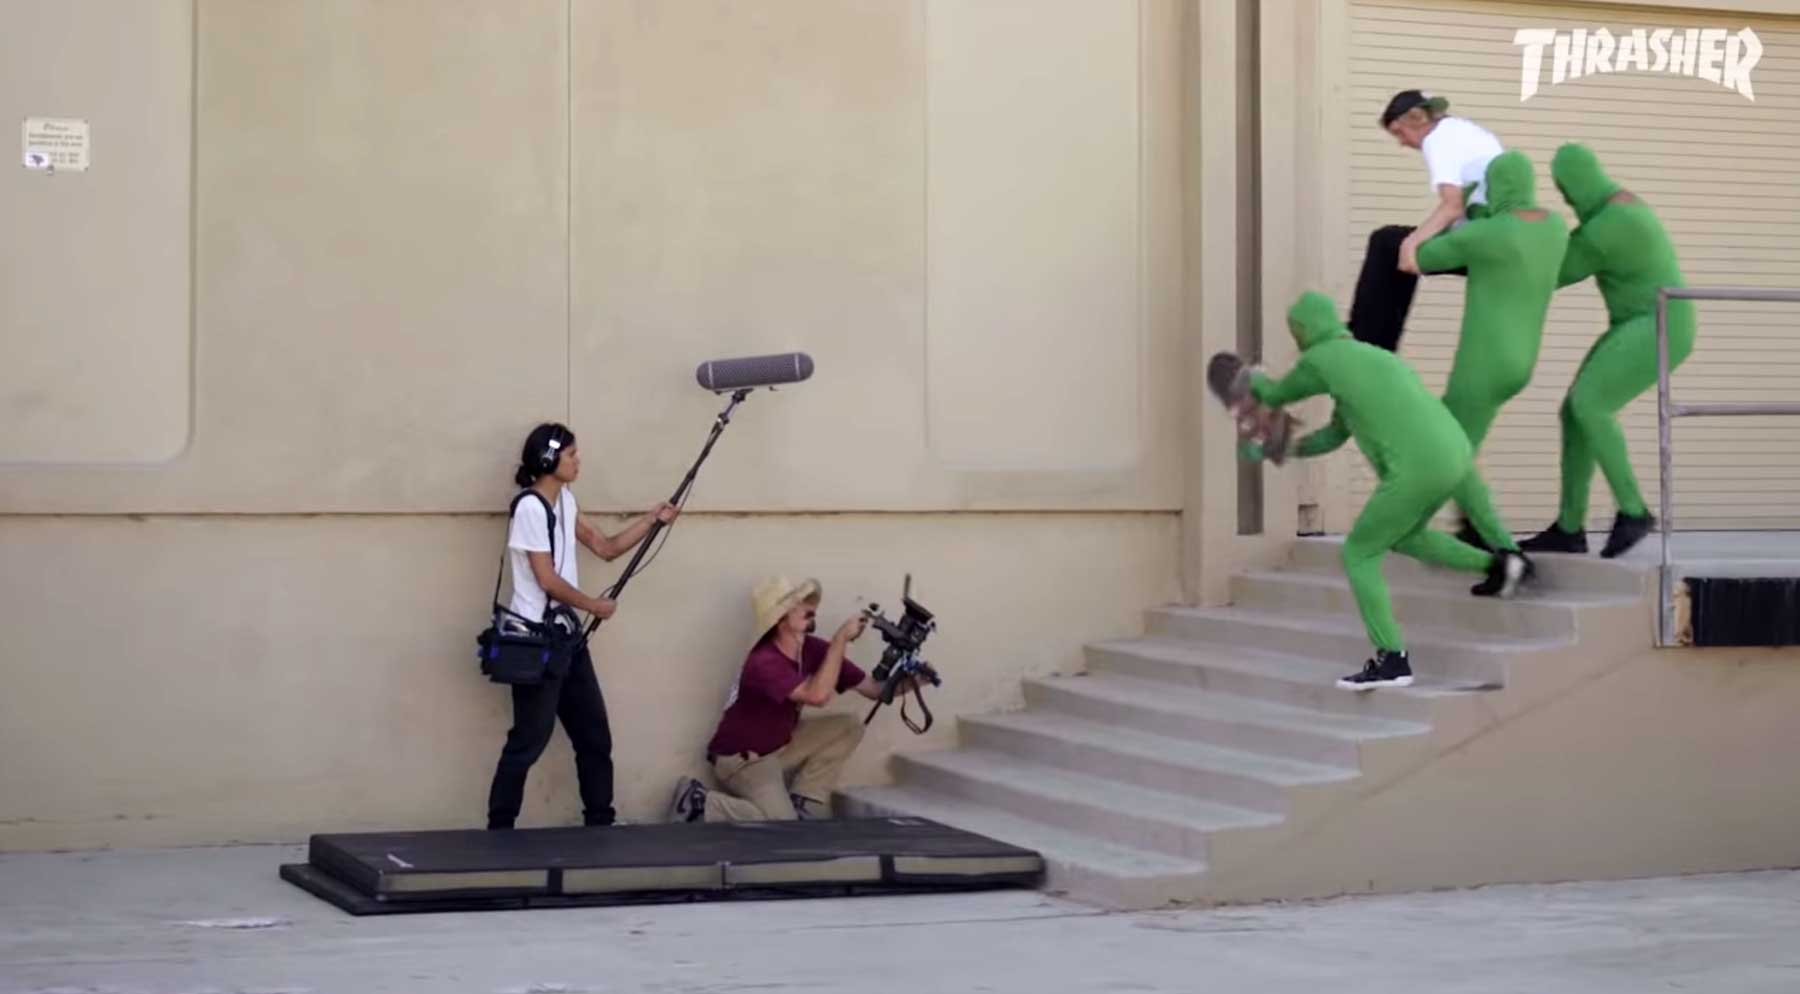 Parodie: So wird ein Skate-Video gedreht making-of-eines-skateboardvideos 